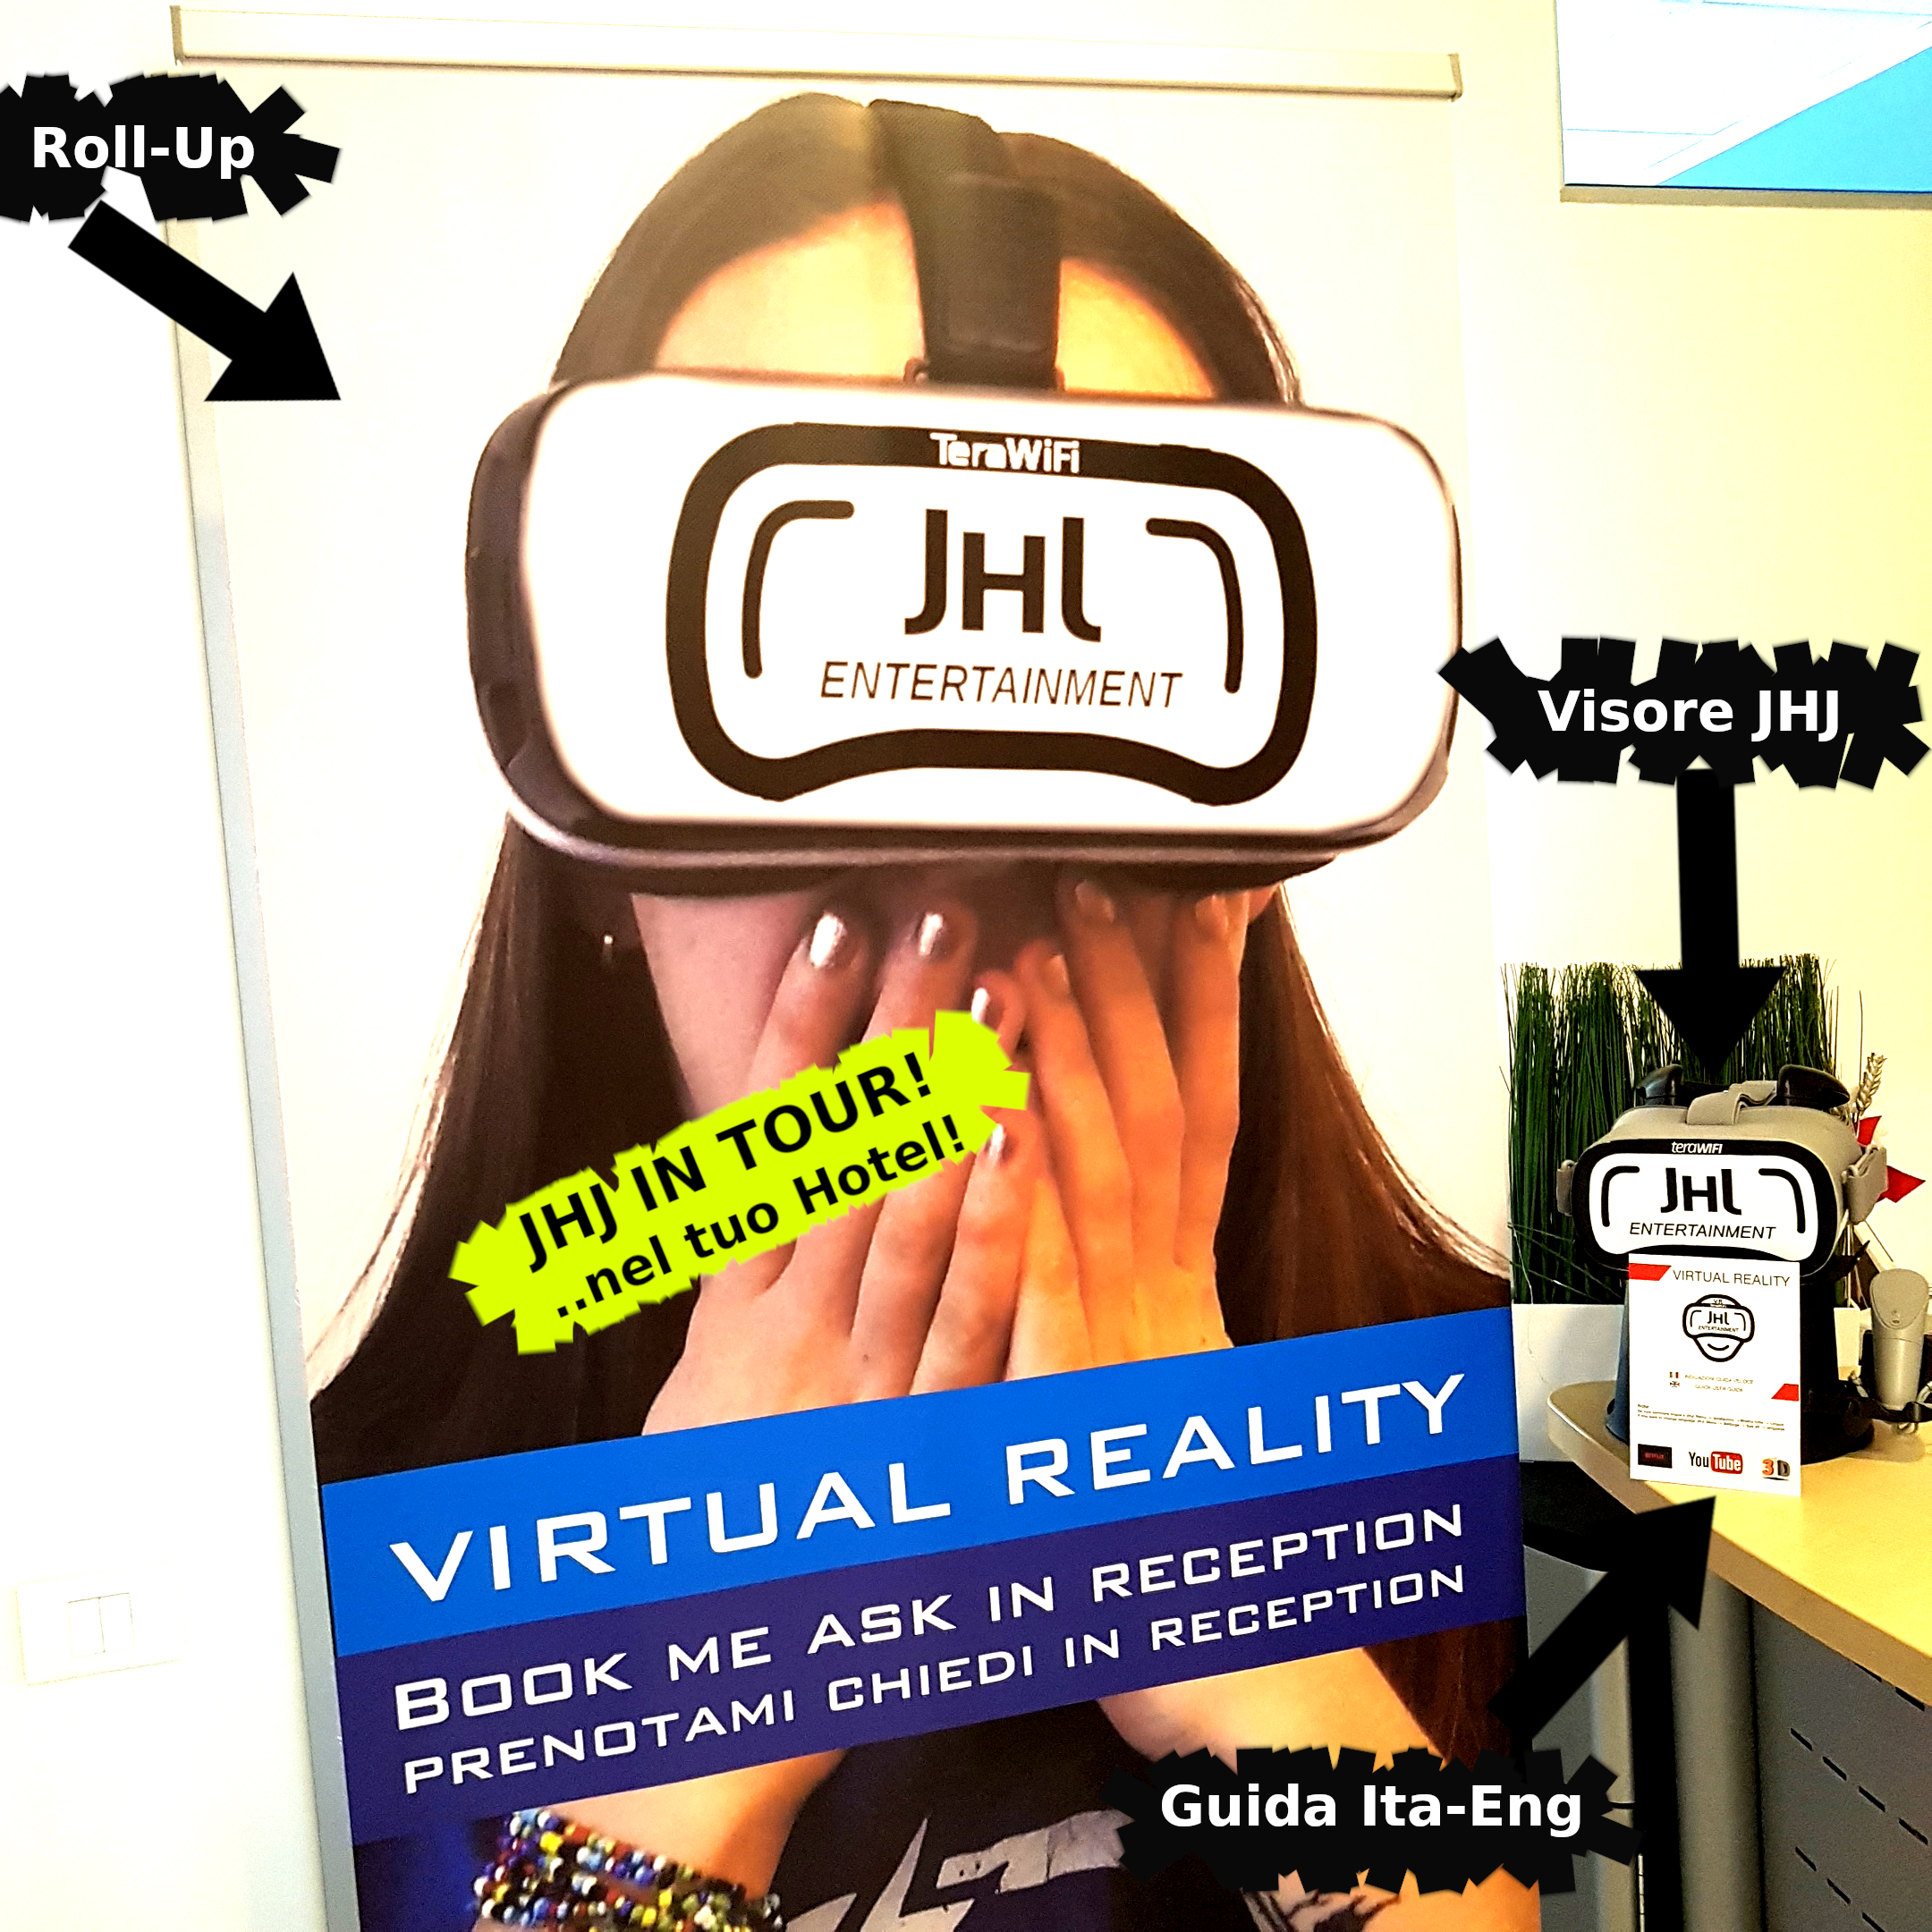 realtà virtuale hotel | APP PER HOTEL I APPLICAZIONE PERSONALIZZABILE FREE